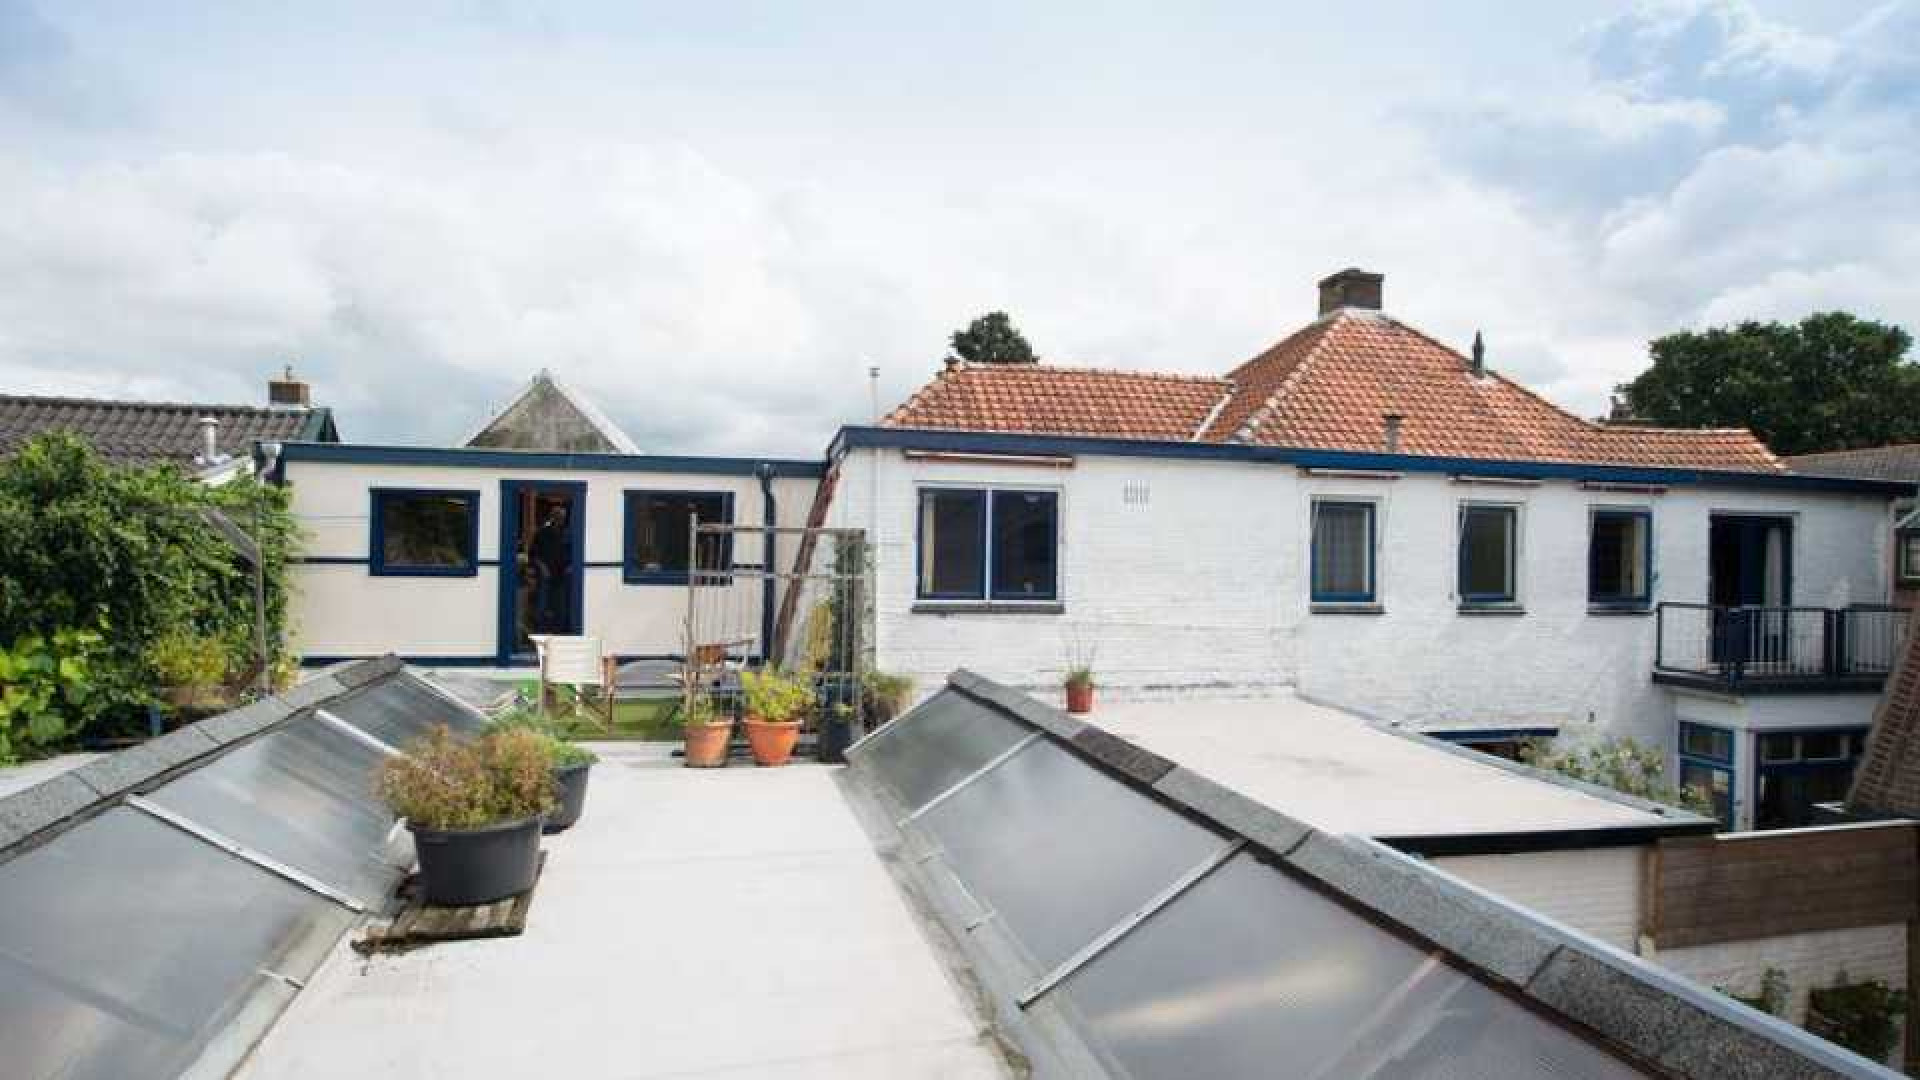 Manuela Kemp koopt vrijstaand huis met groot atelier in Hilversum. Zie foto's